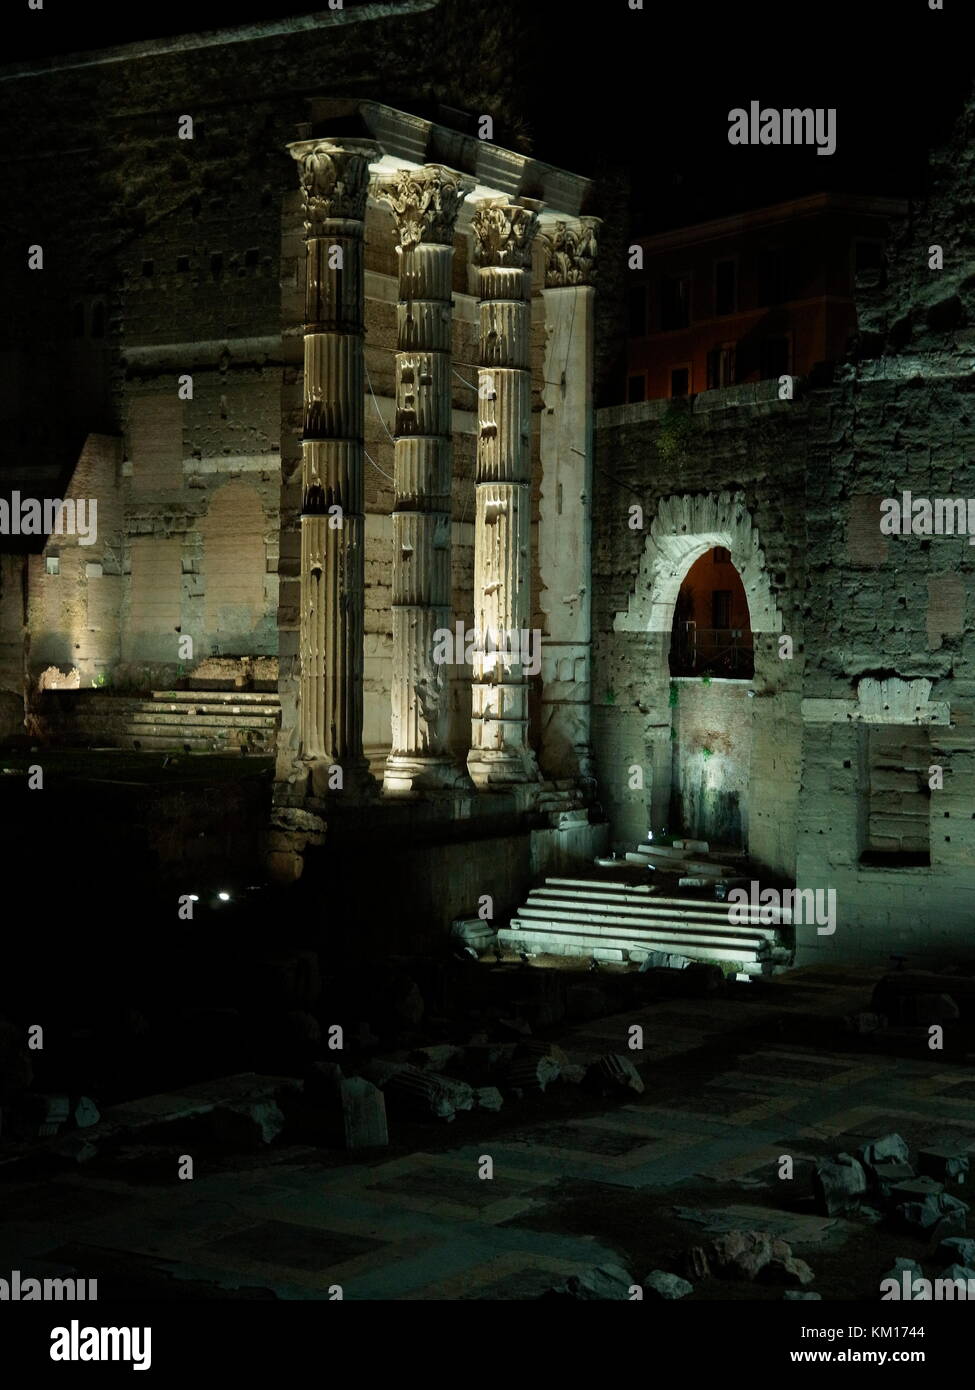 AJAXNETPHOTO. 2015. Rom, Italien. - Römische Ruinen - Forum des Augustus, gedenkt der Schlacht bei Philippi, IN DER NÄHE DER PIAZZO DEL FORO TRAIANO. Foto: Jonathan Eastland/AJAX REF: GXR 151012 5703 Stockfoto